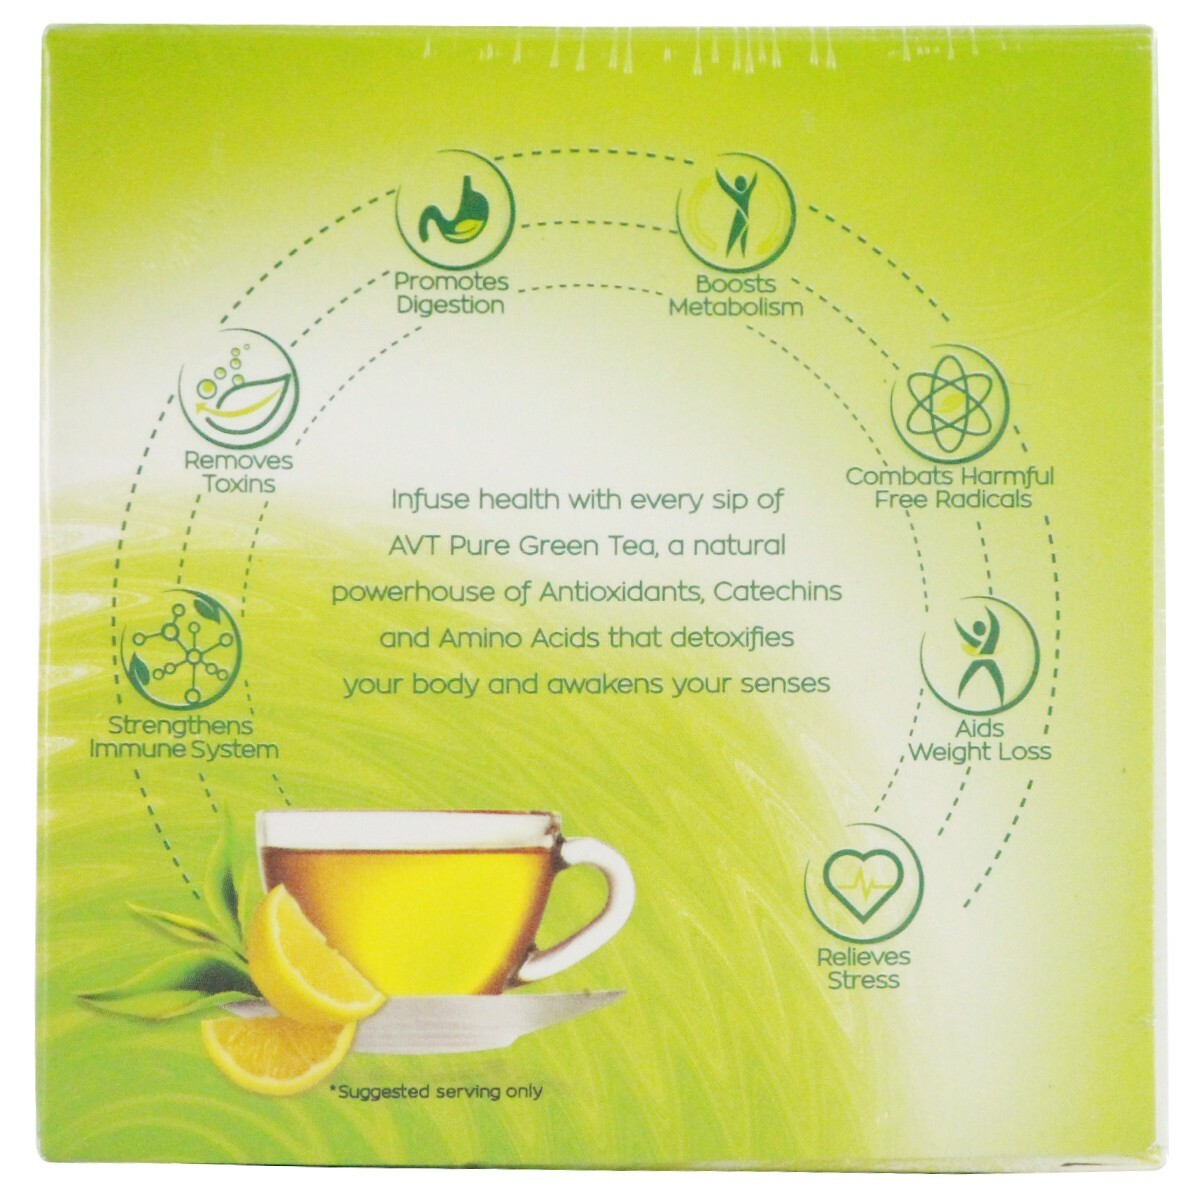 AVT Green Tea 10s Lemon